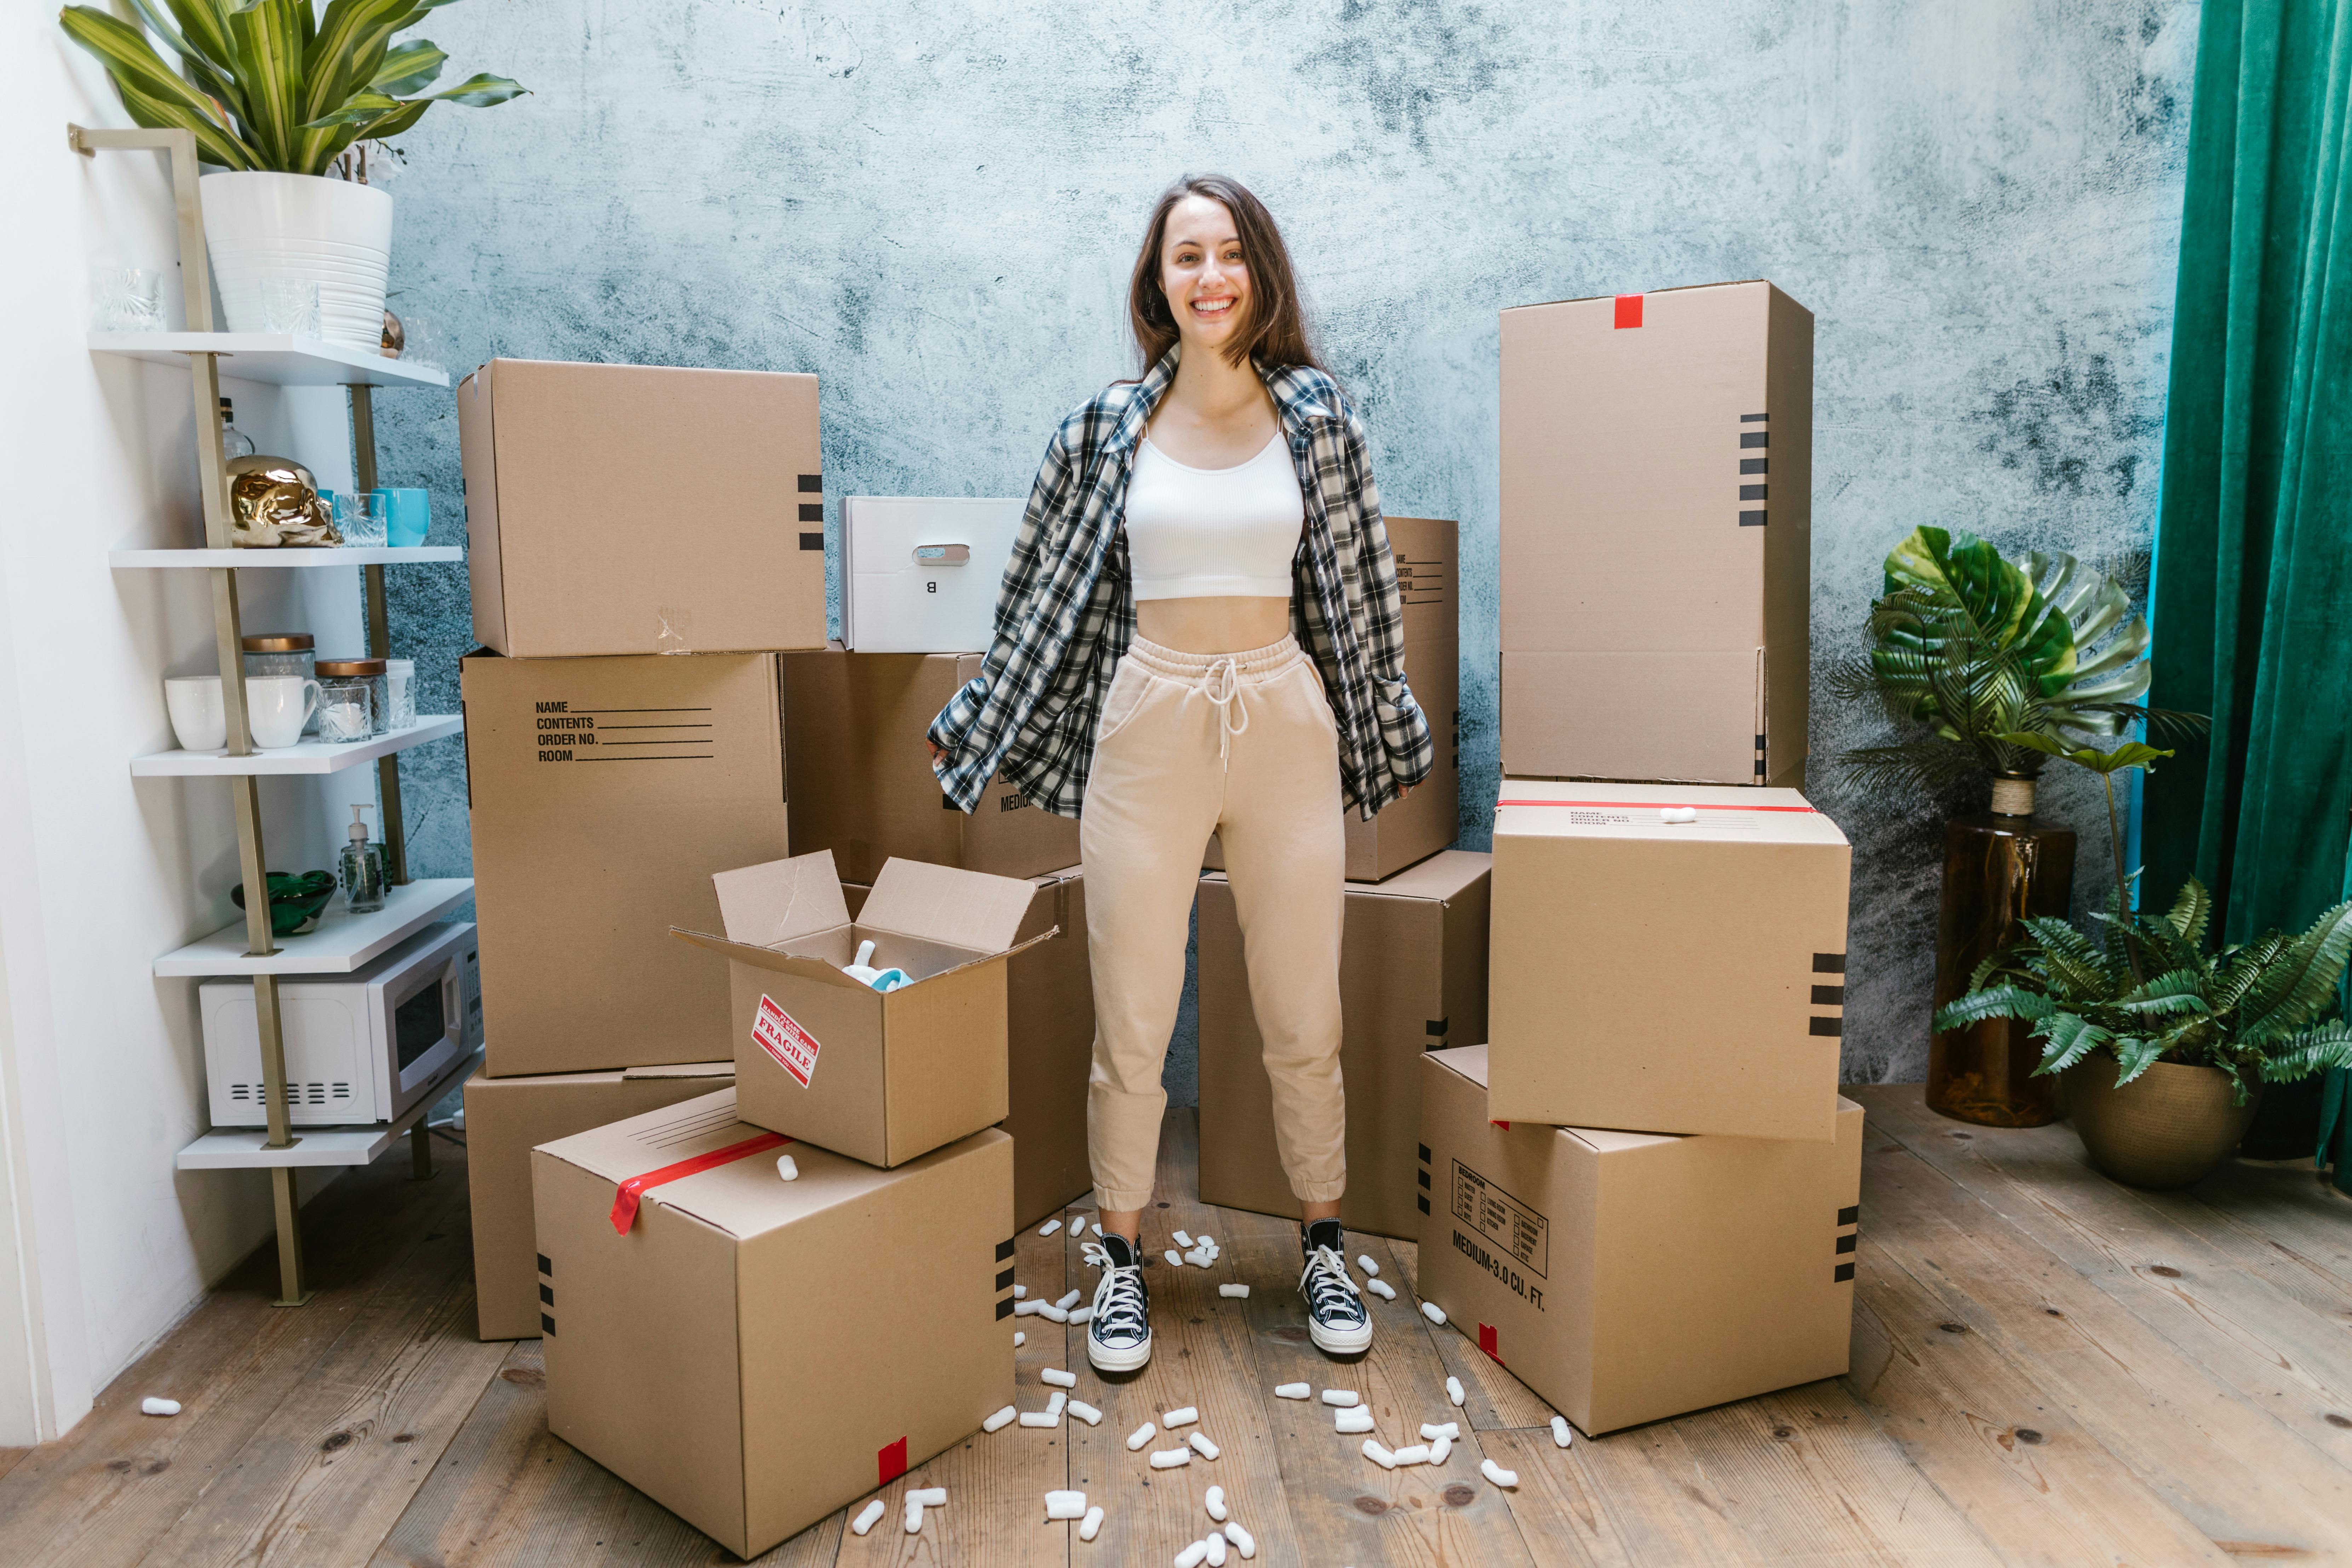 Eine Frau lächelt, während sie von Kisten umgeben ist | Quelle: Pexels